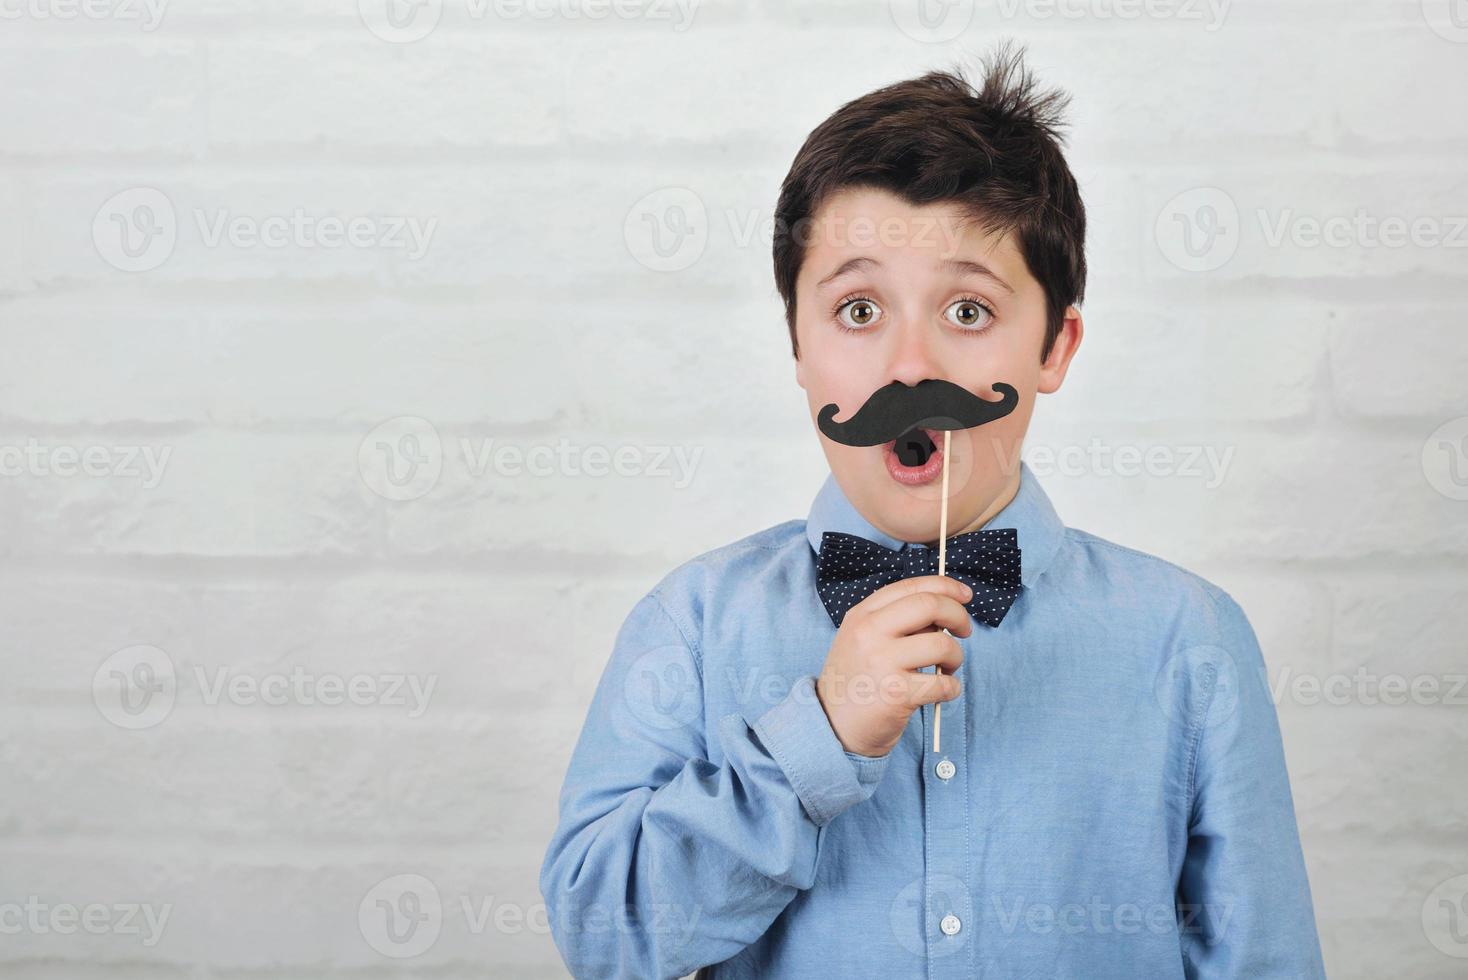 pojke med falsk mustasch på pinne foto